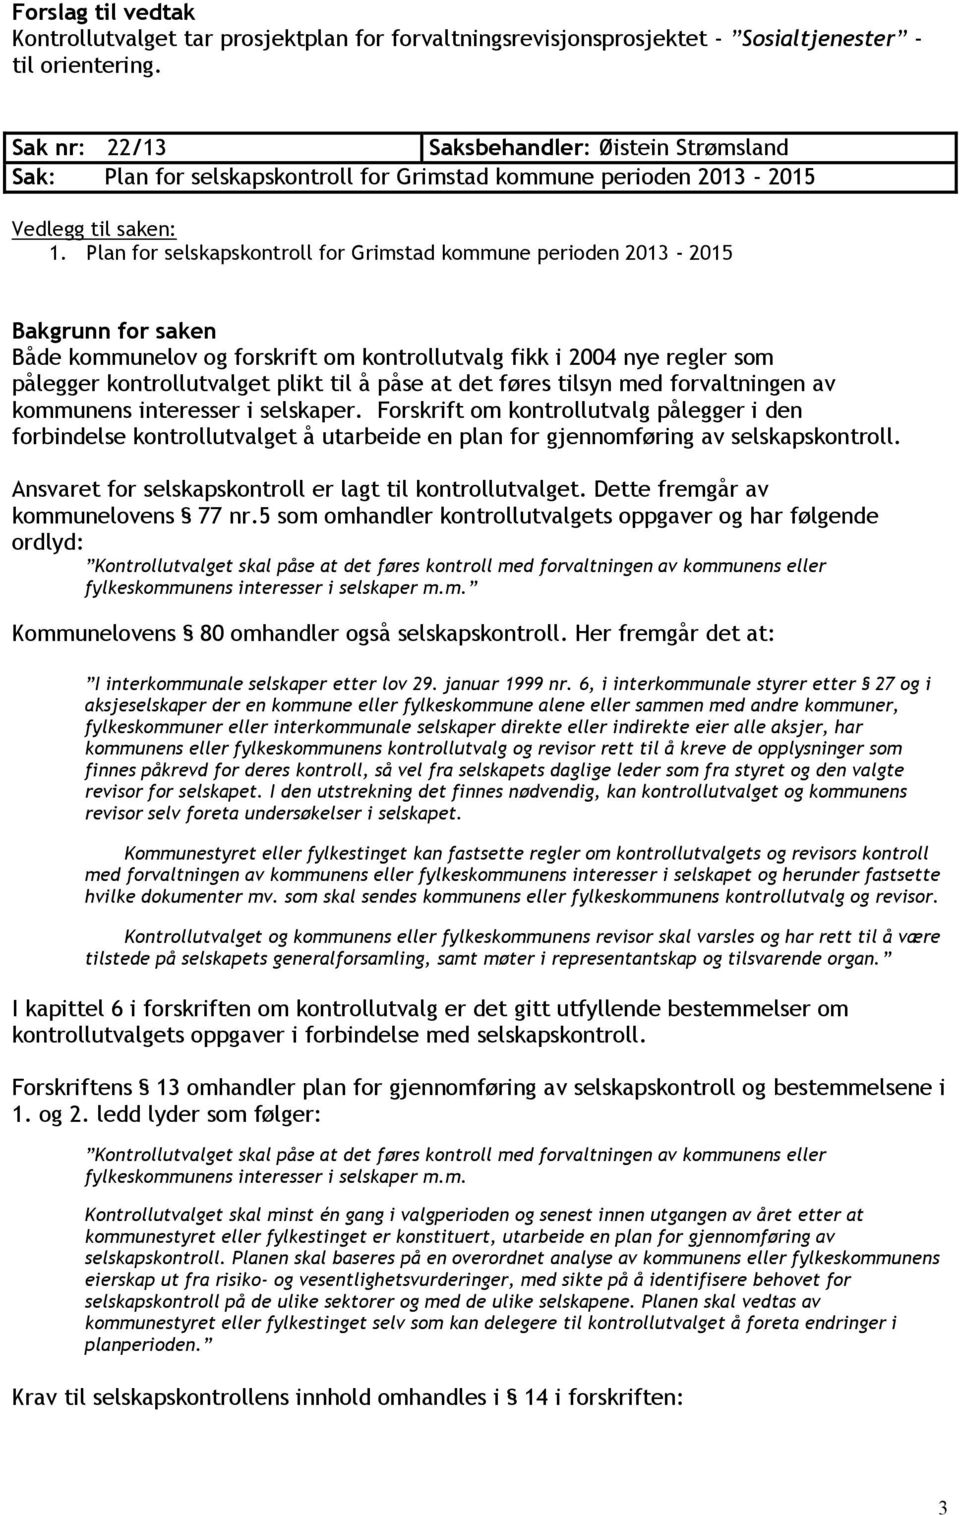 Plan for selskapskontroll for Grimstad kommune perioden 2013-2015 Både kommunelov og forskrift om kontrollutvalg fikk i 2004 nye regler som pålegger kontrollutvalget plikt til å påse at det føres